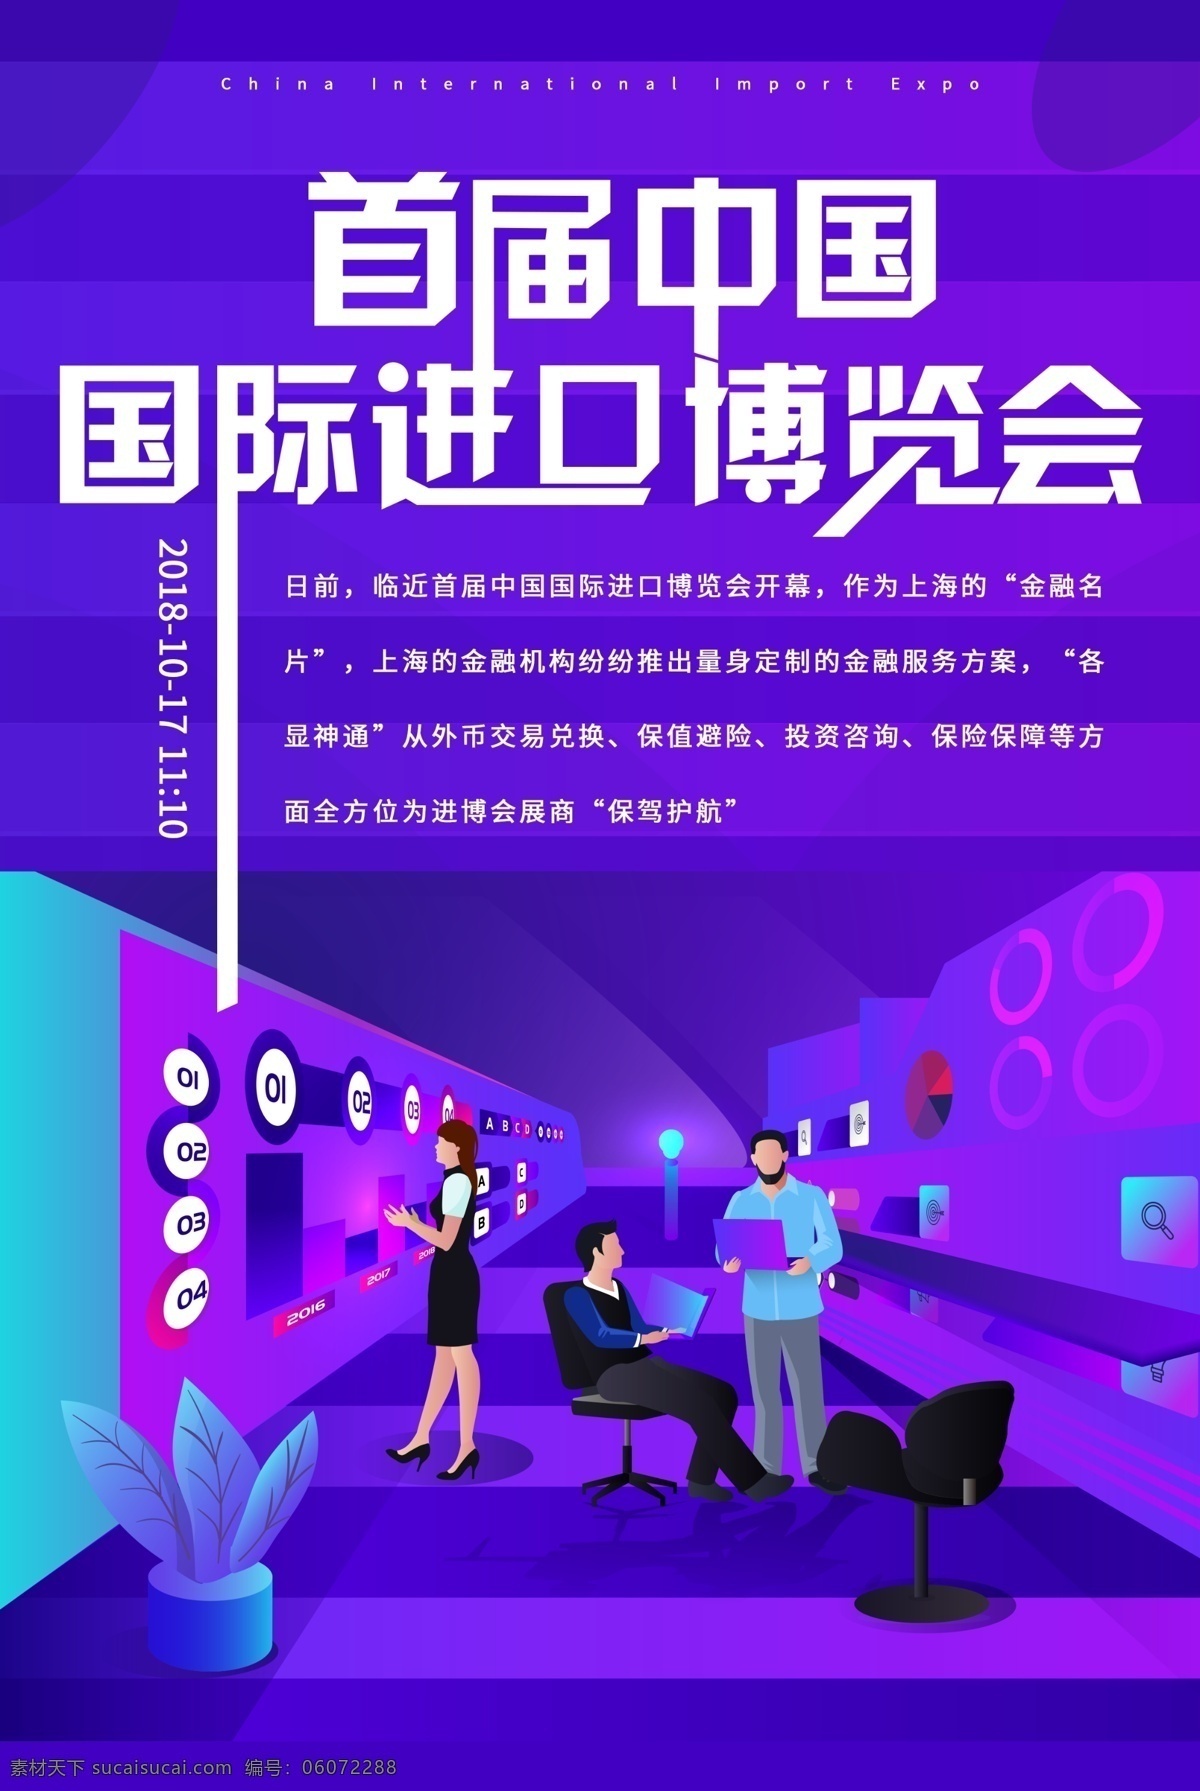 首届 中国 国际 进口 博览会 海报 中国博览会 博览会海报 进口博览会 首届博览会